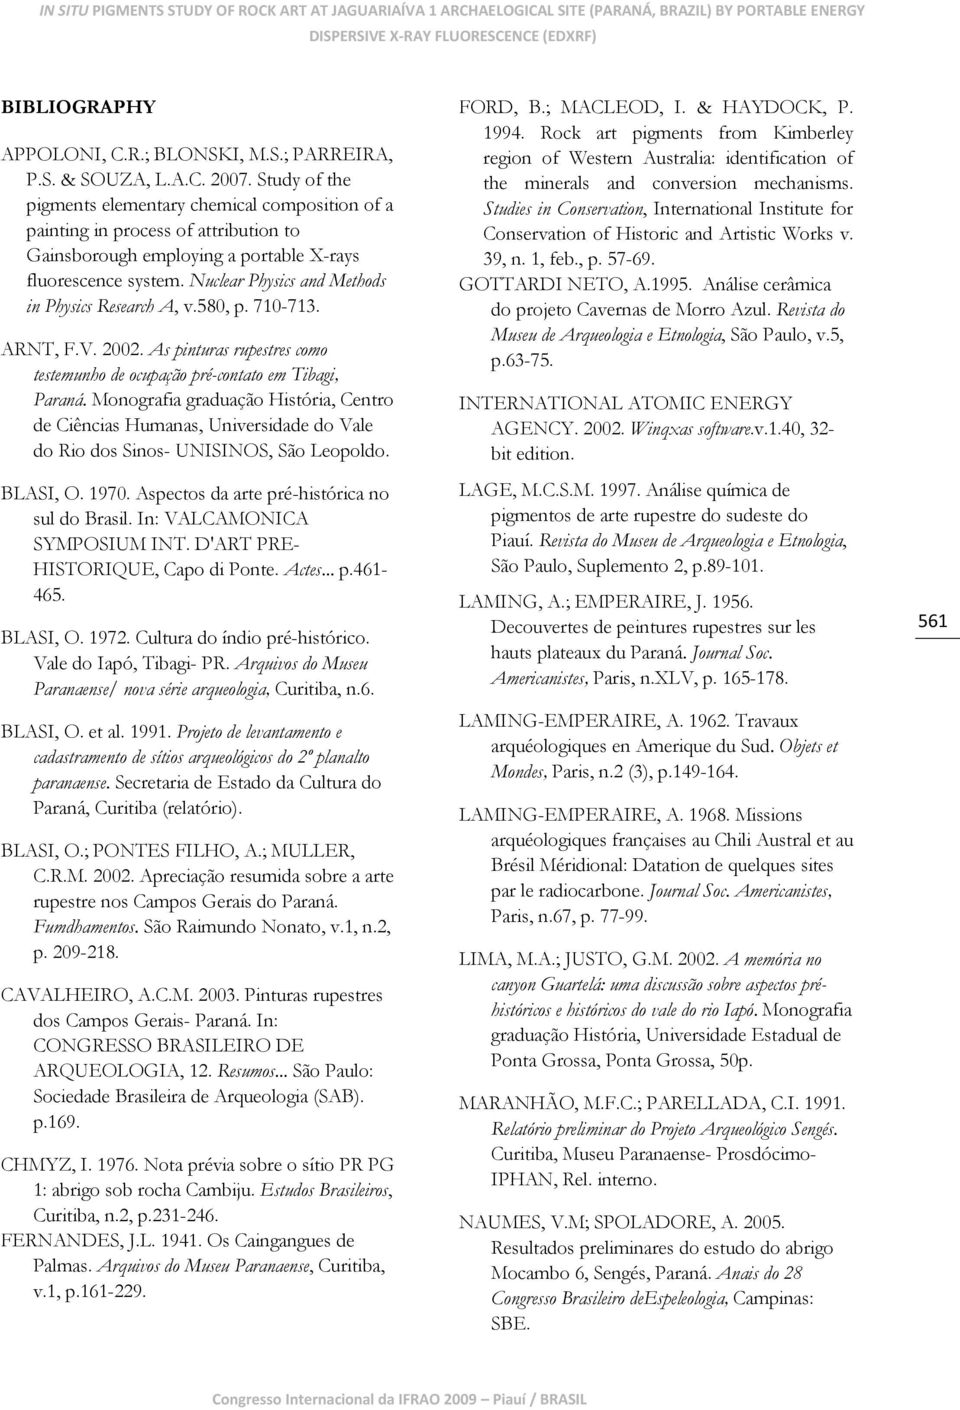 Nuclear Physics and Methods in Physics Research A, v.580, p. 710-713. ARNT, F.V. 2002. As pinturas rupestres como testemunho de ocupação pré-contato em Tibagi, Paraná.